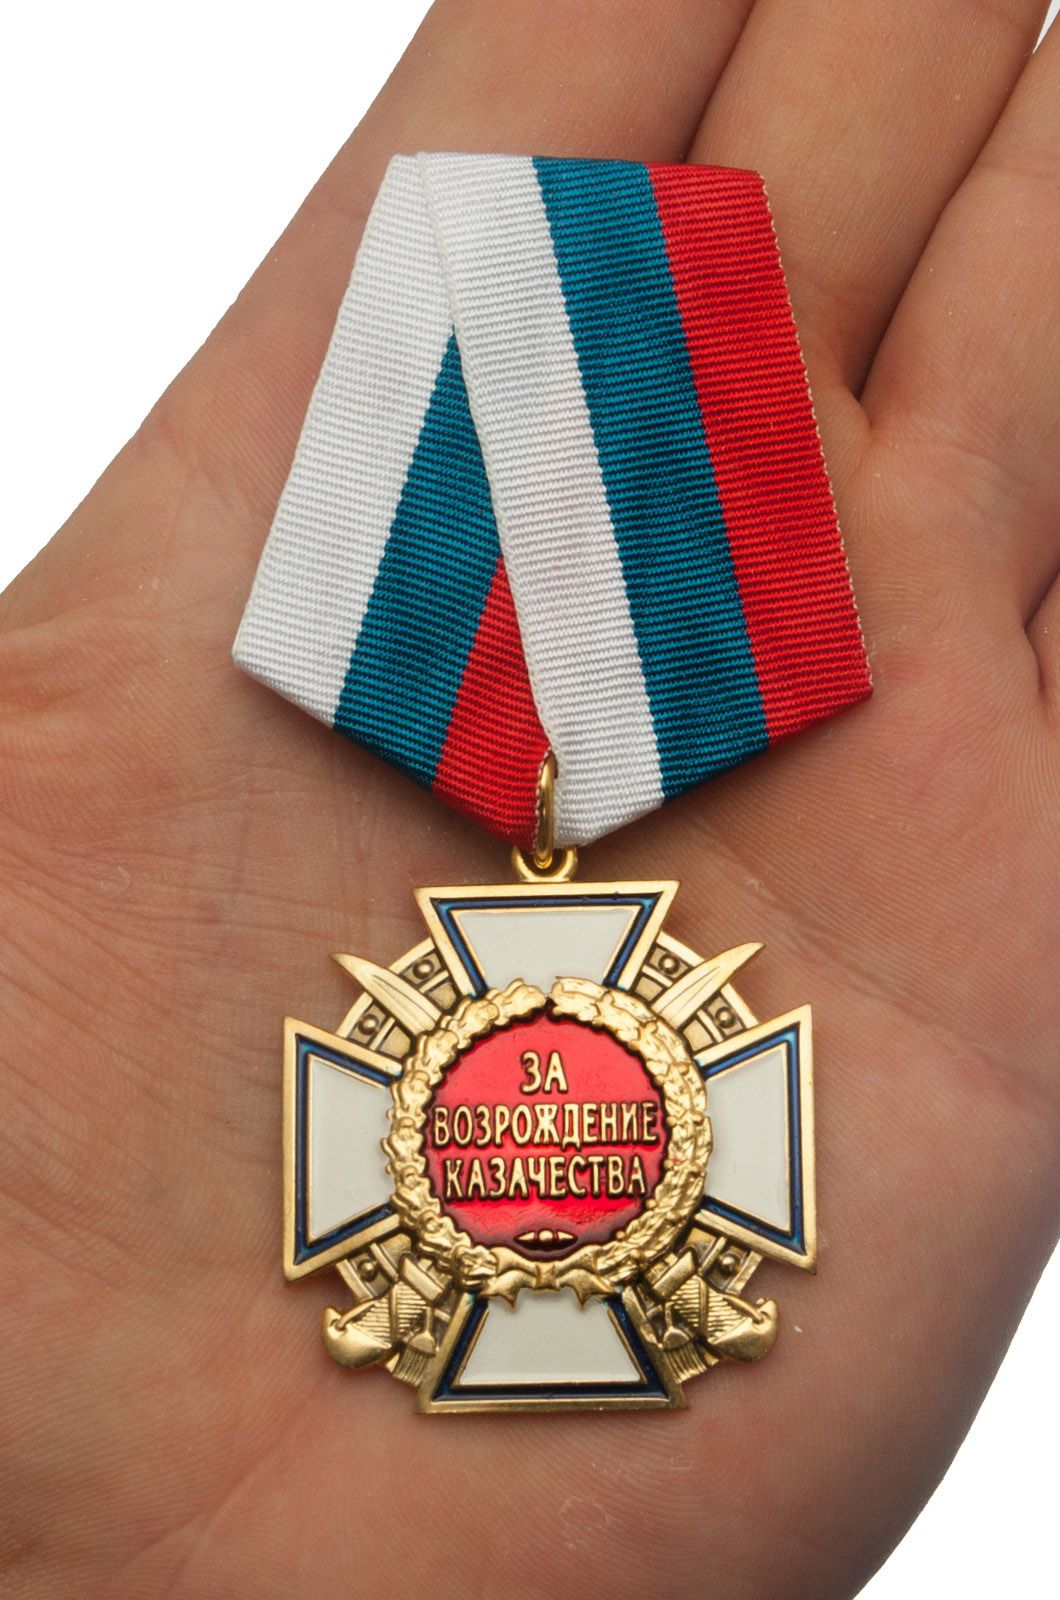 Медаль "За возрождение казачества" (1 степень) 